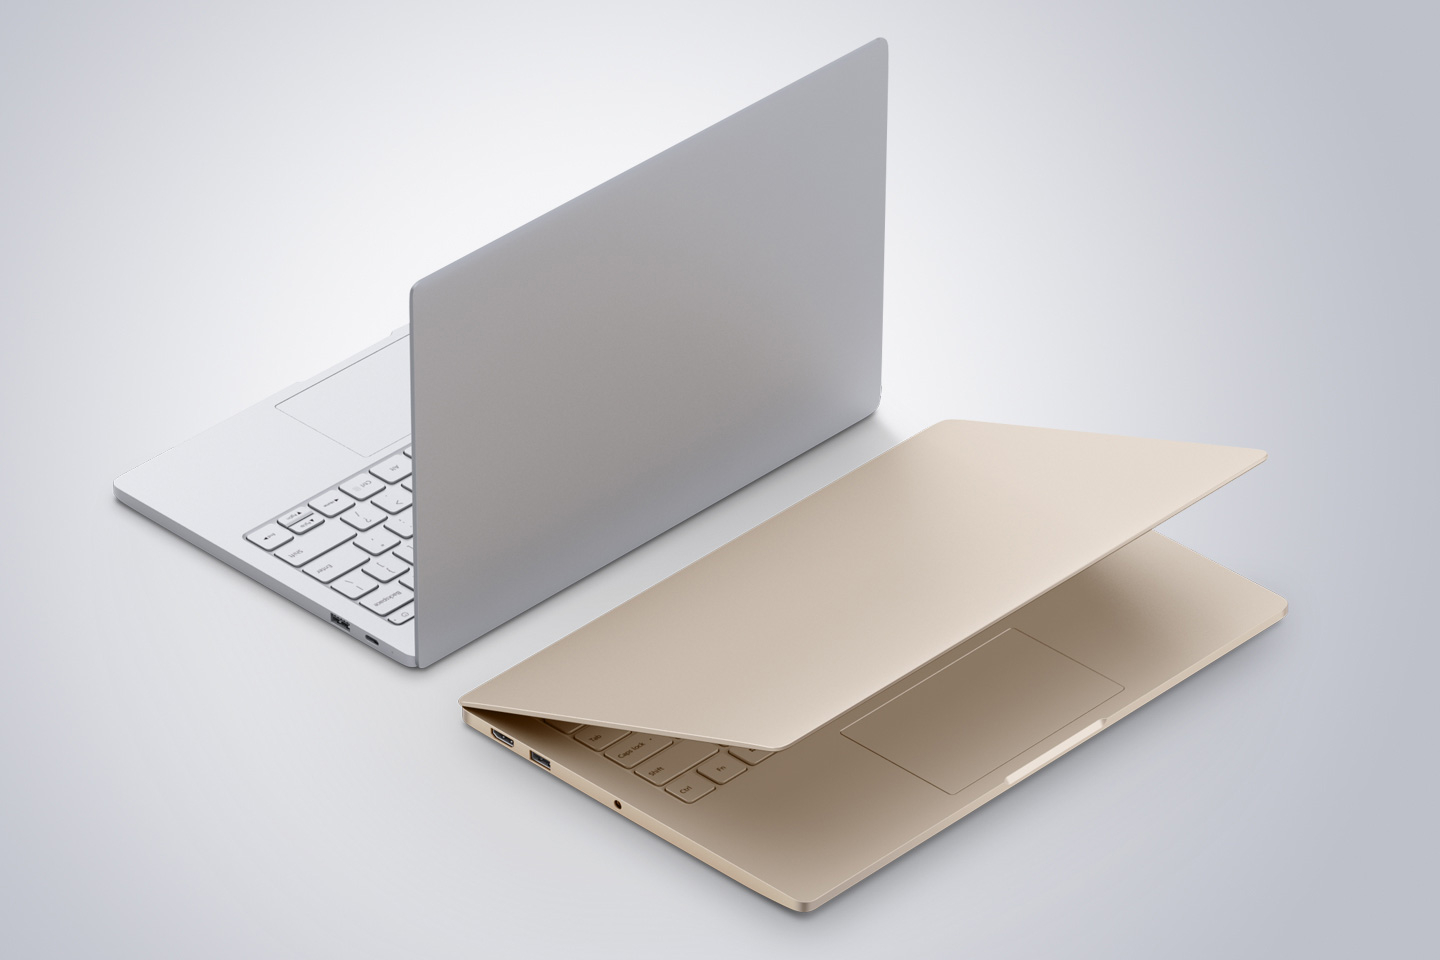 Immagine pubblicata in relazione al seguente contenuto: Xiaomi presenta i notebook Mi Notebook Air e sfida i Macbook Air di Apple | Nome immagine: news24674_Xiaomi-Mi-Notebook-Air_2.jpg